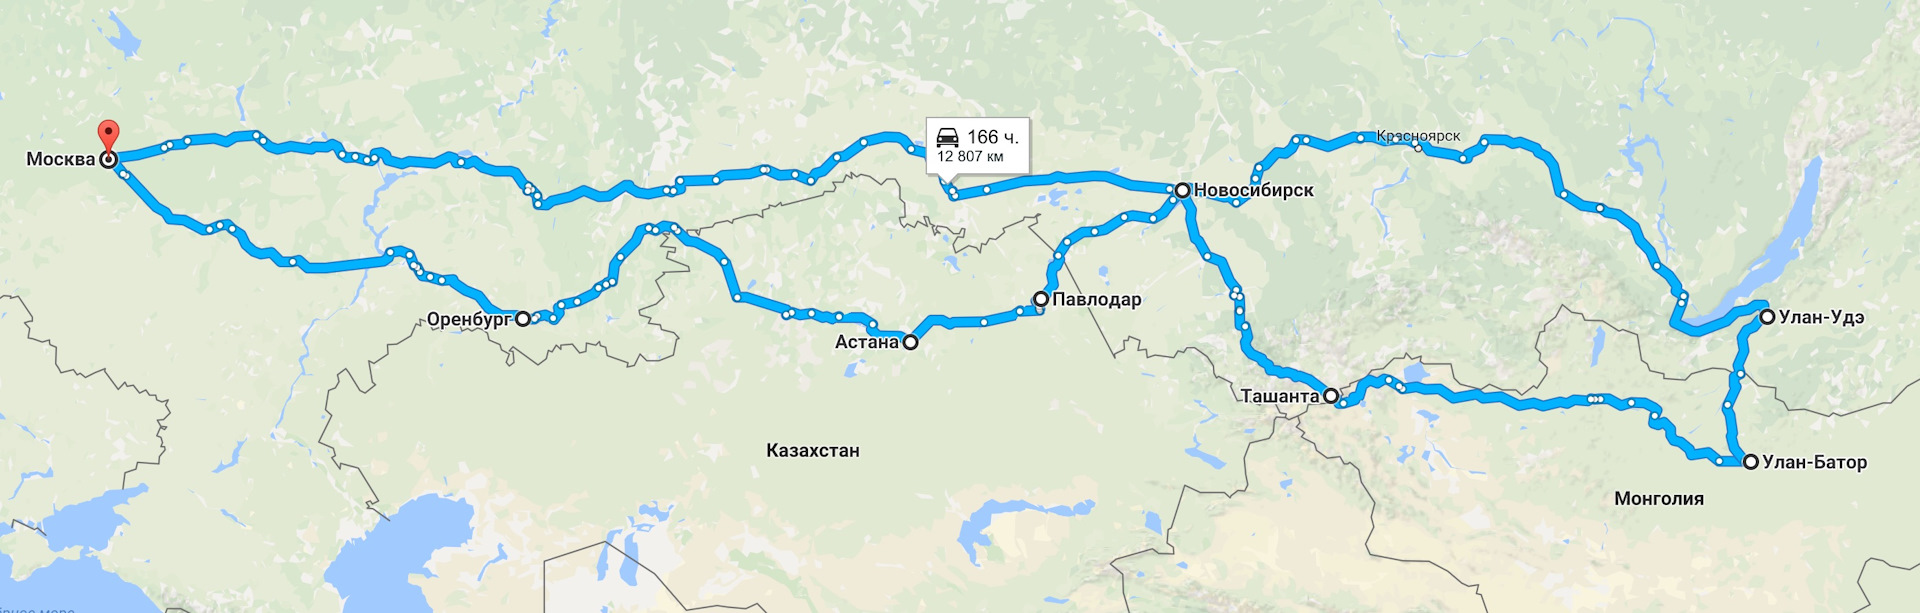 Расстояние до новосибирска на машине. Оренбург Новосибирск на карте. Оренбург Новосибирск маршрут. Новосибирск Москва Оренбург. Улан Удэ до Монголии.